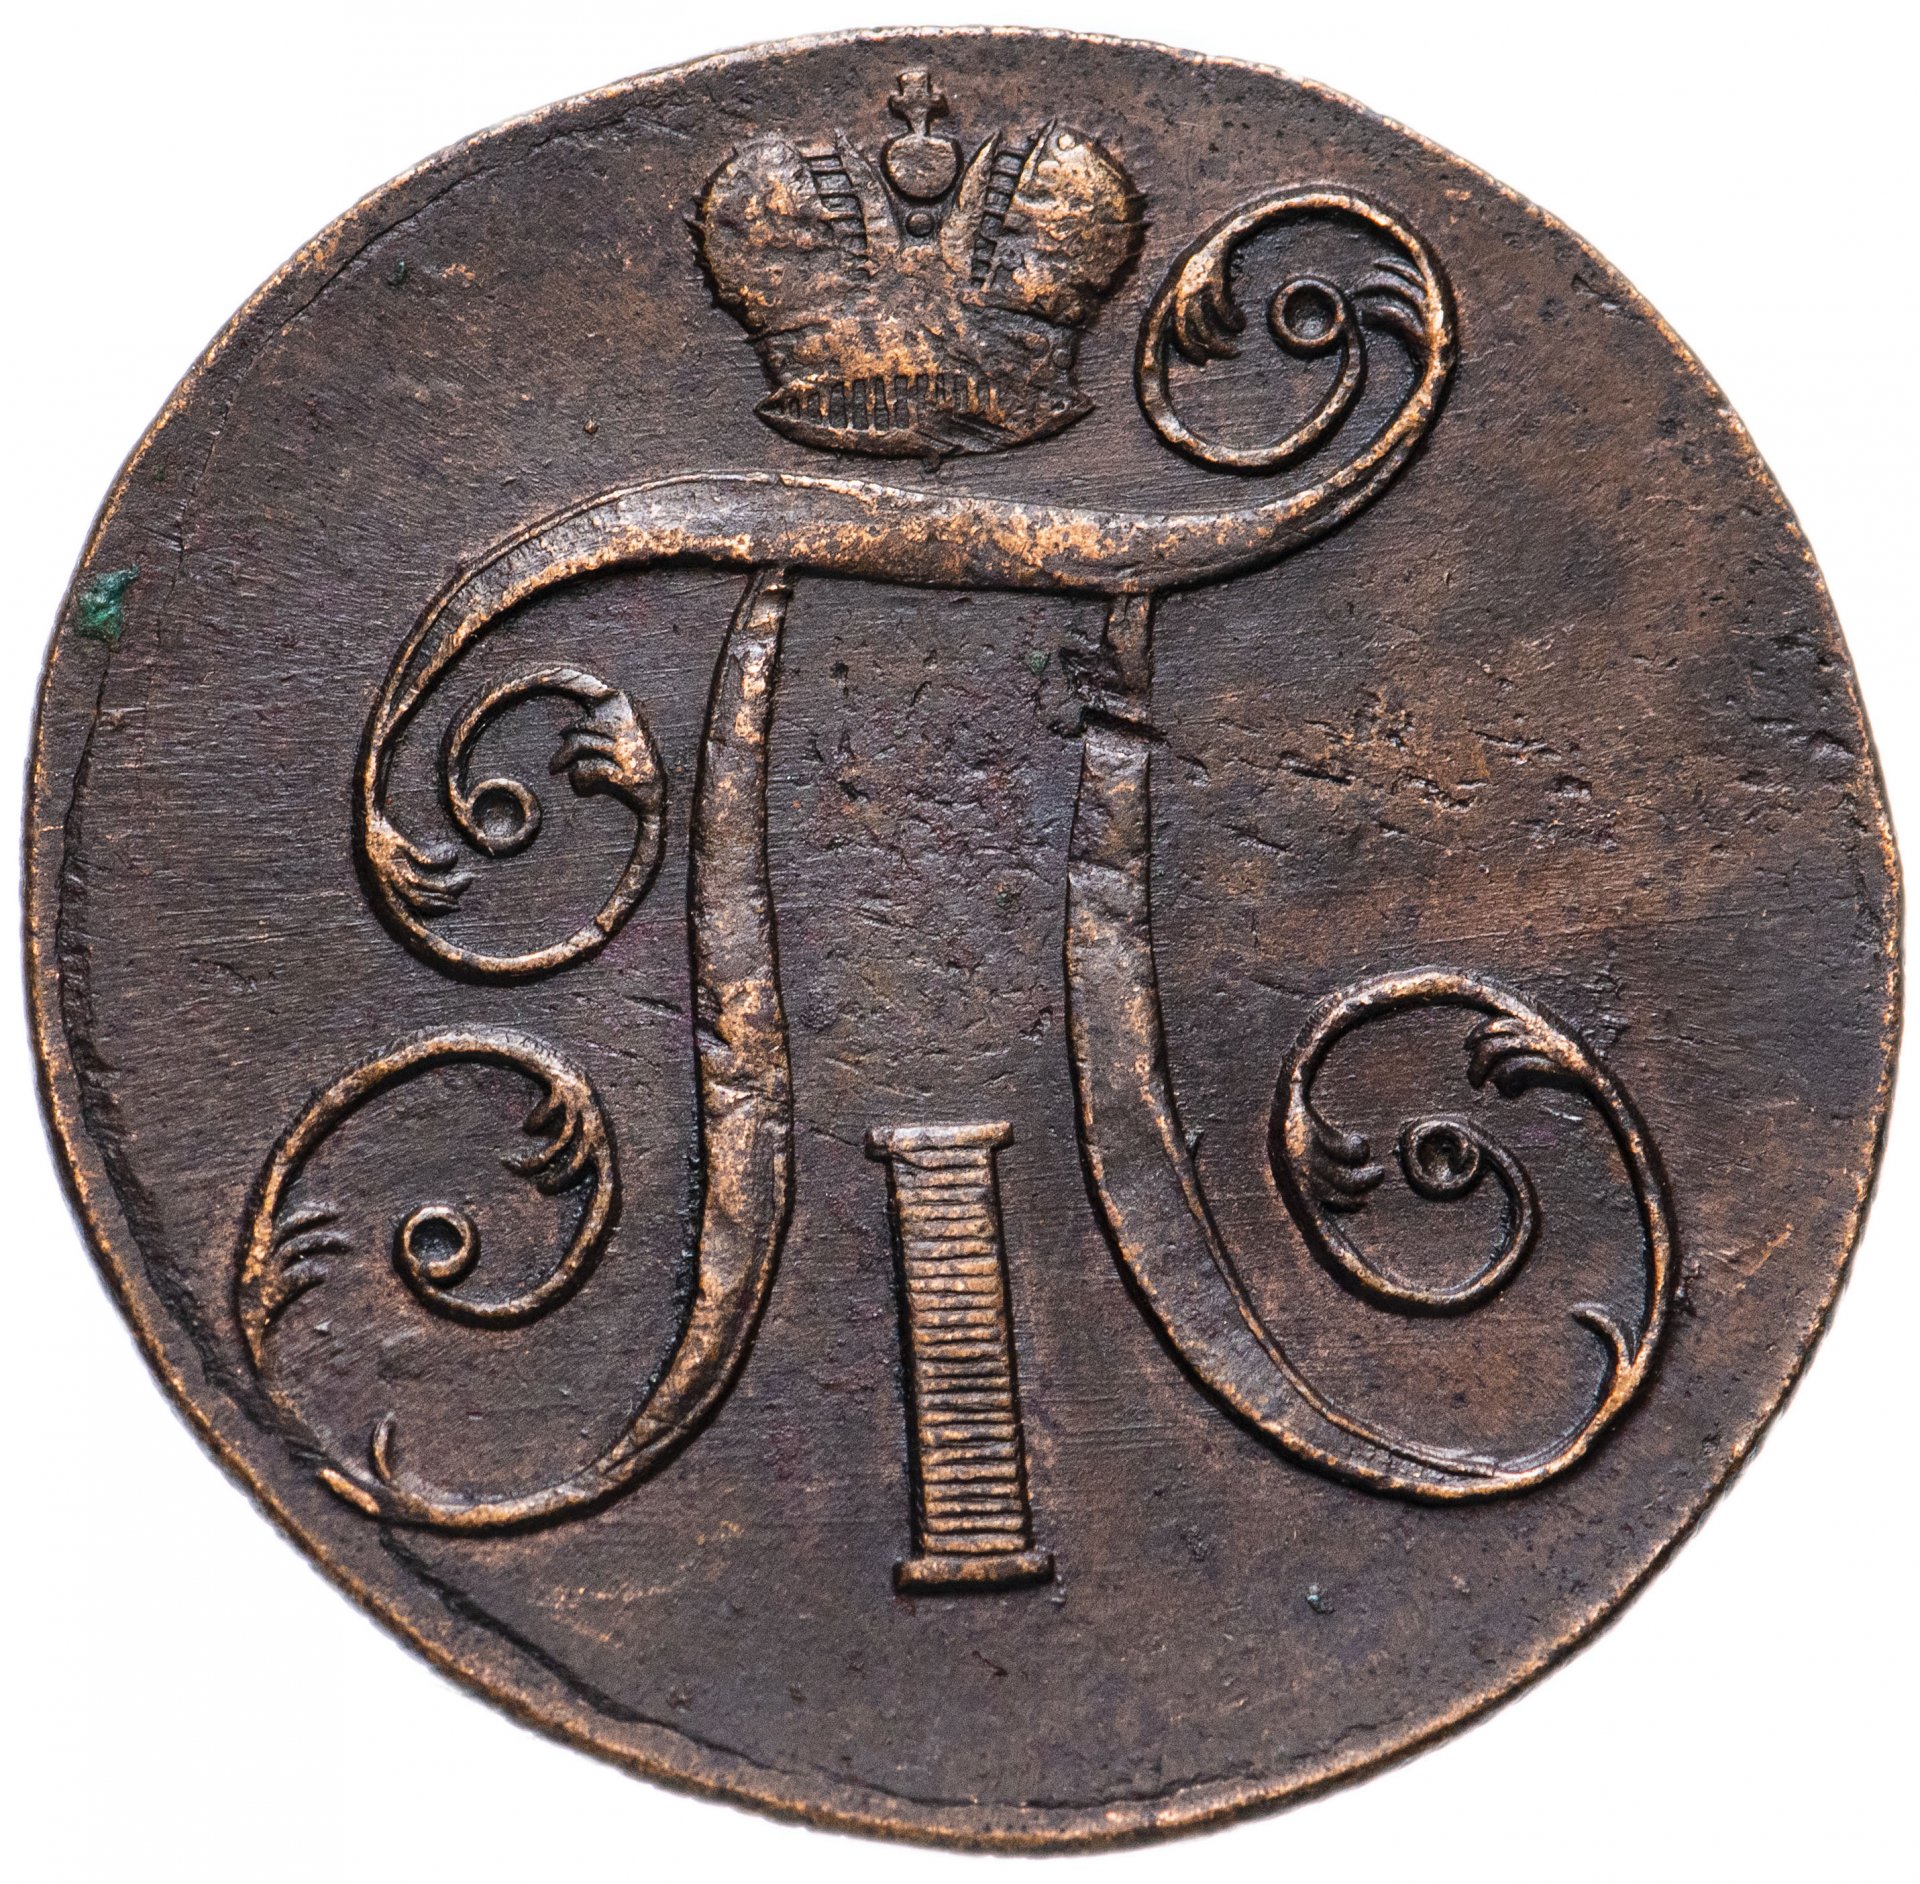 1 от 1800. Медные монеты 1800. Серебряная монета Cronay 1800 года. Монеты 1800-х годов. Монета 1800 п.